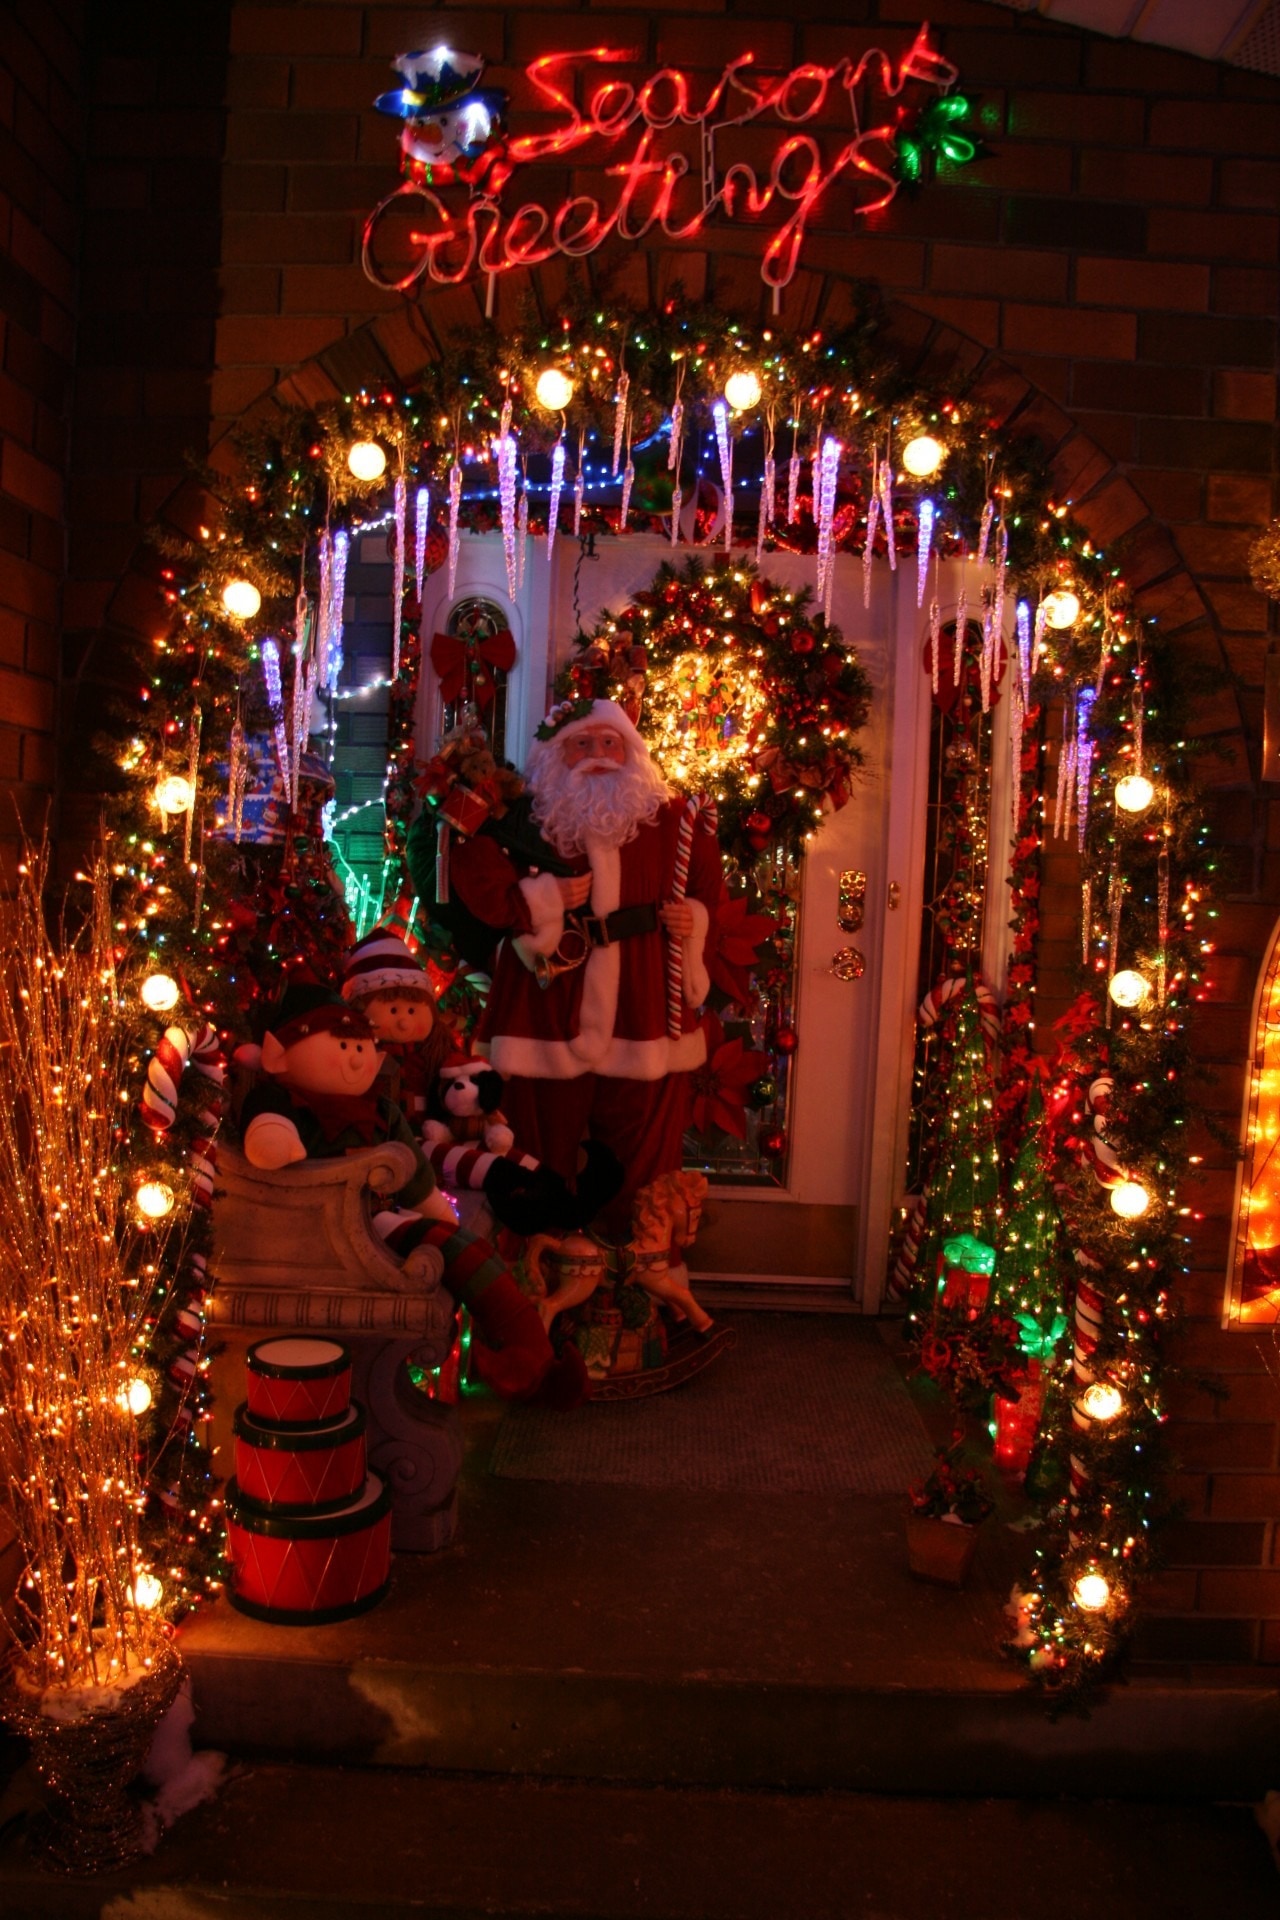 Decoration, Christmas, Lights, Holiday, illuminated, night